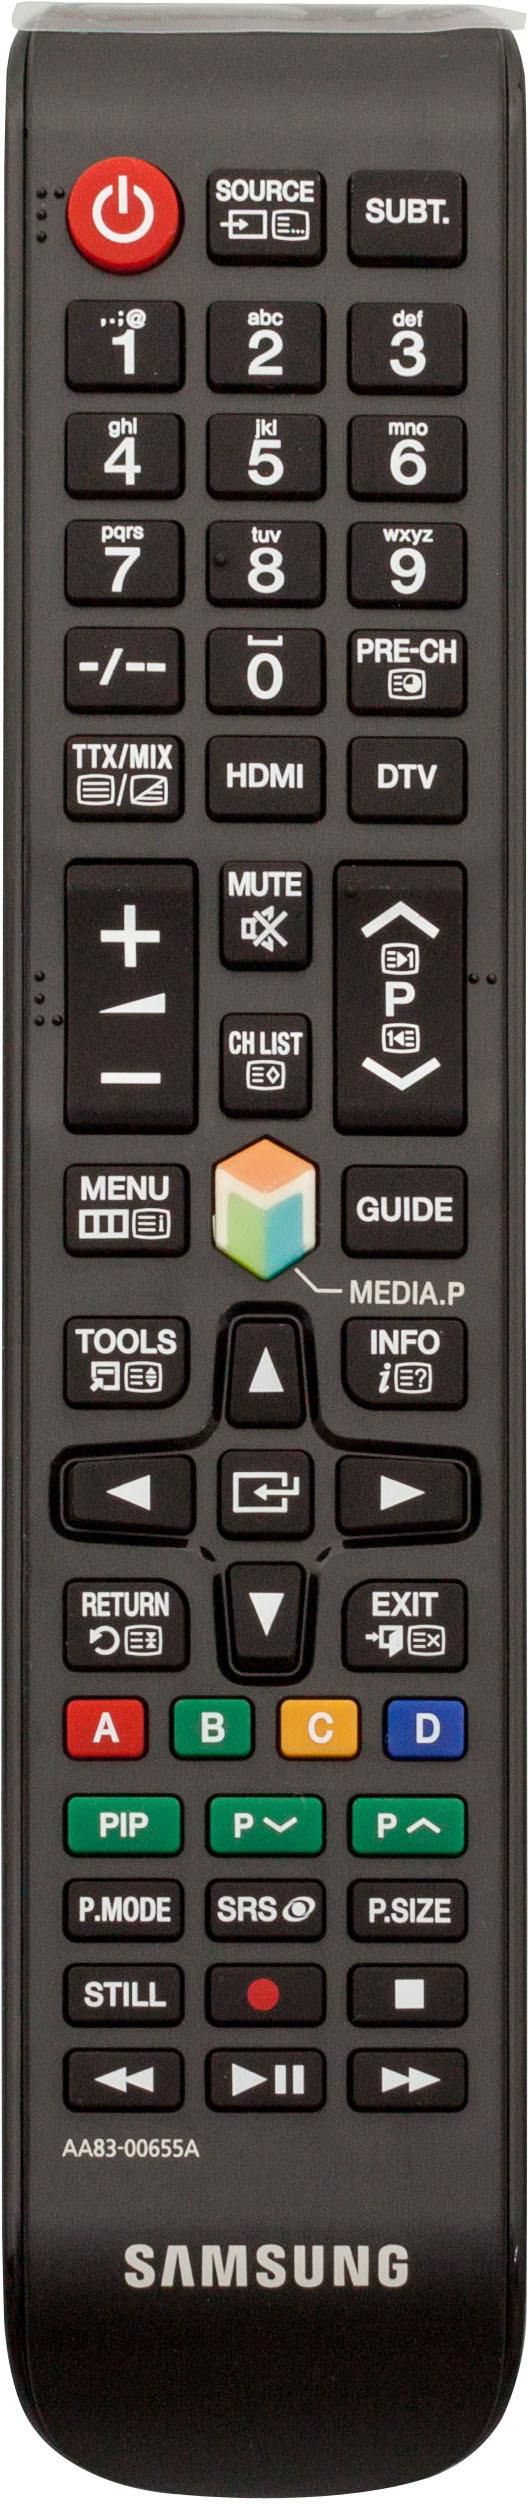 Samsung TM1260 Remote Control Black - W124489420